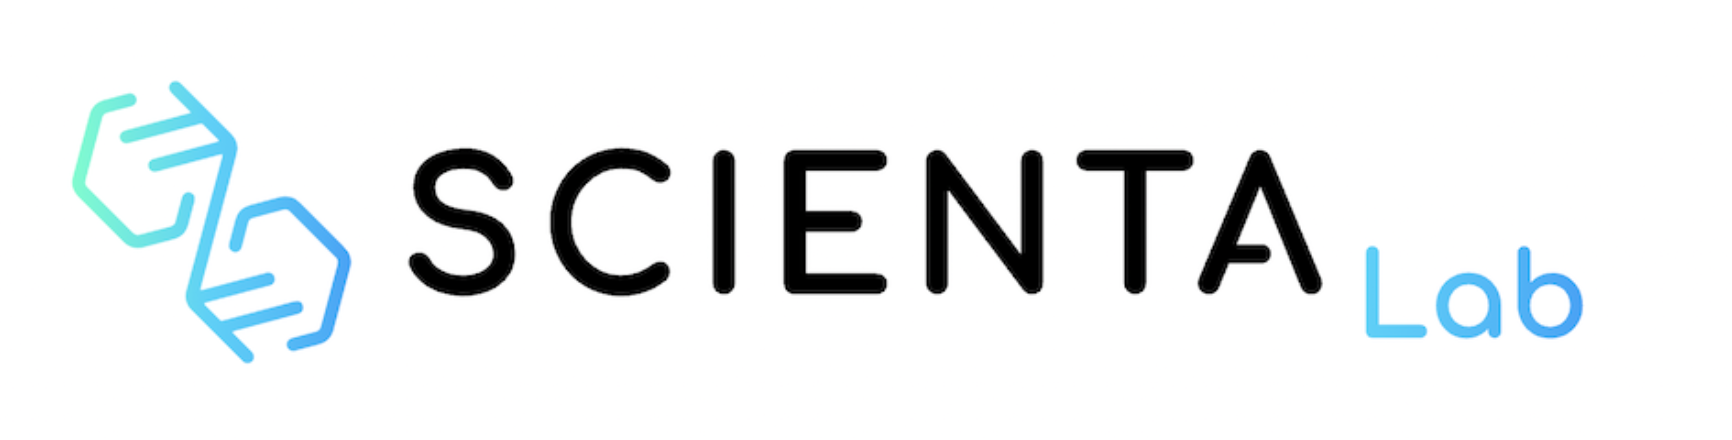 Scienta Lab